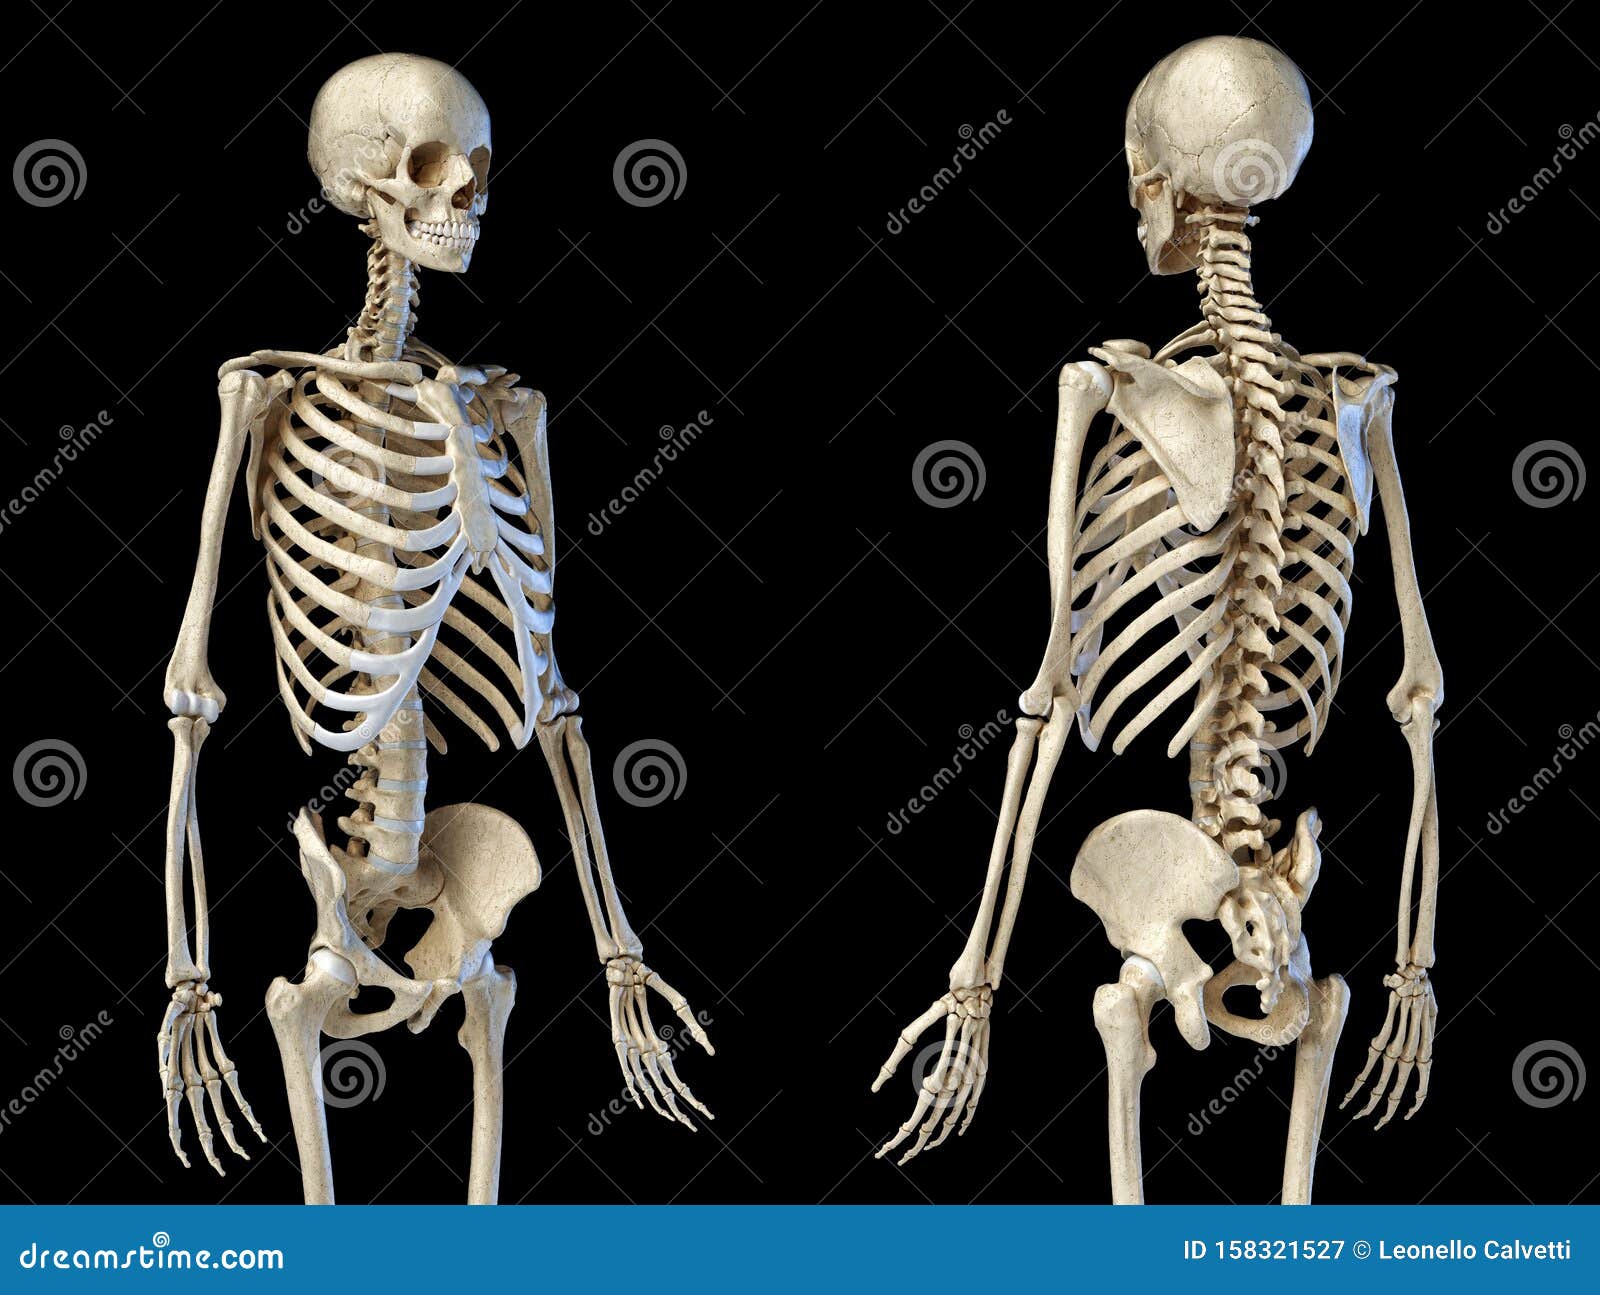 https://thumbs.dreamstime.com/z/m%C3%A4nnliches-skelett-figur-vorderansicht-und-r%C3%BCckansicht-menschliche-anatomie-k%C3%B6rper-perspektivische-vorder-auf-schwarzem-158321527.jpg